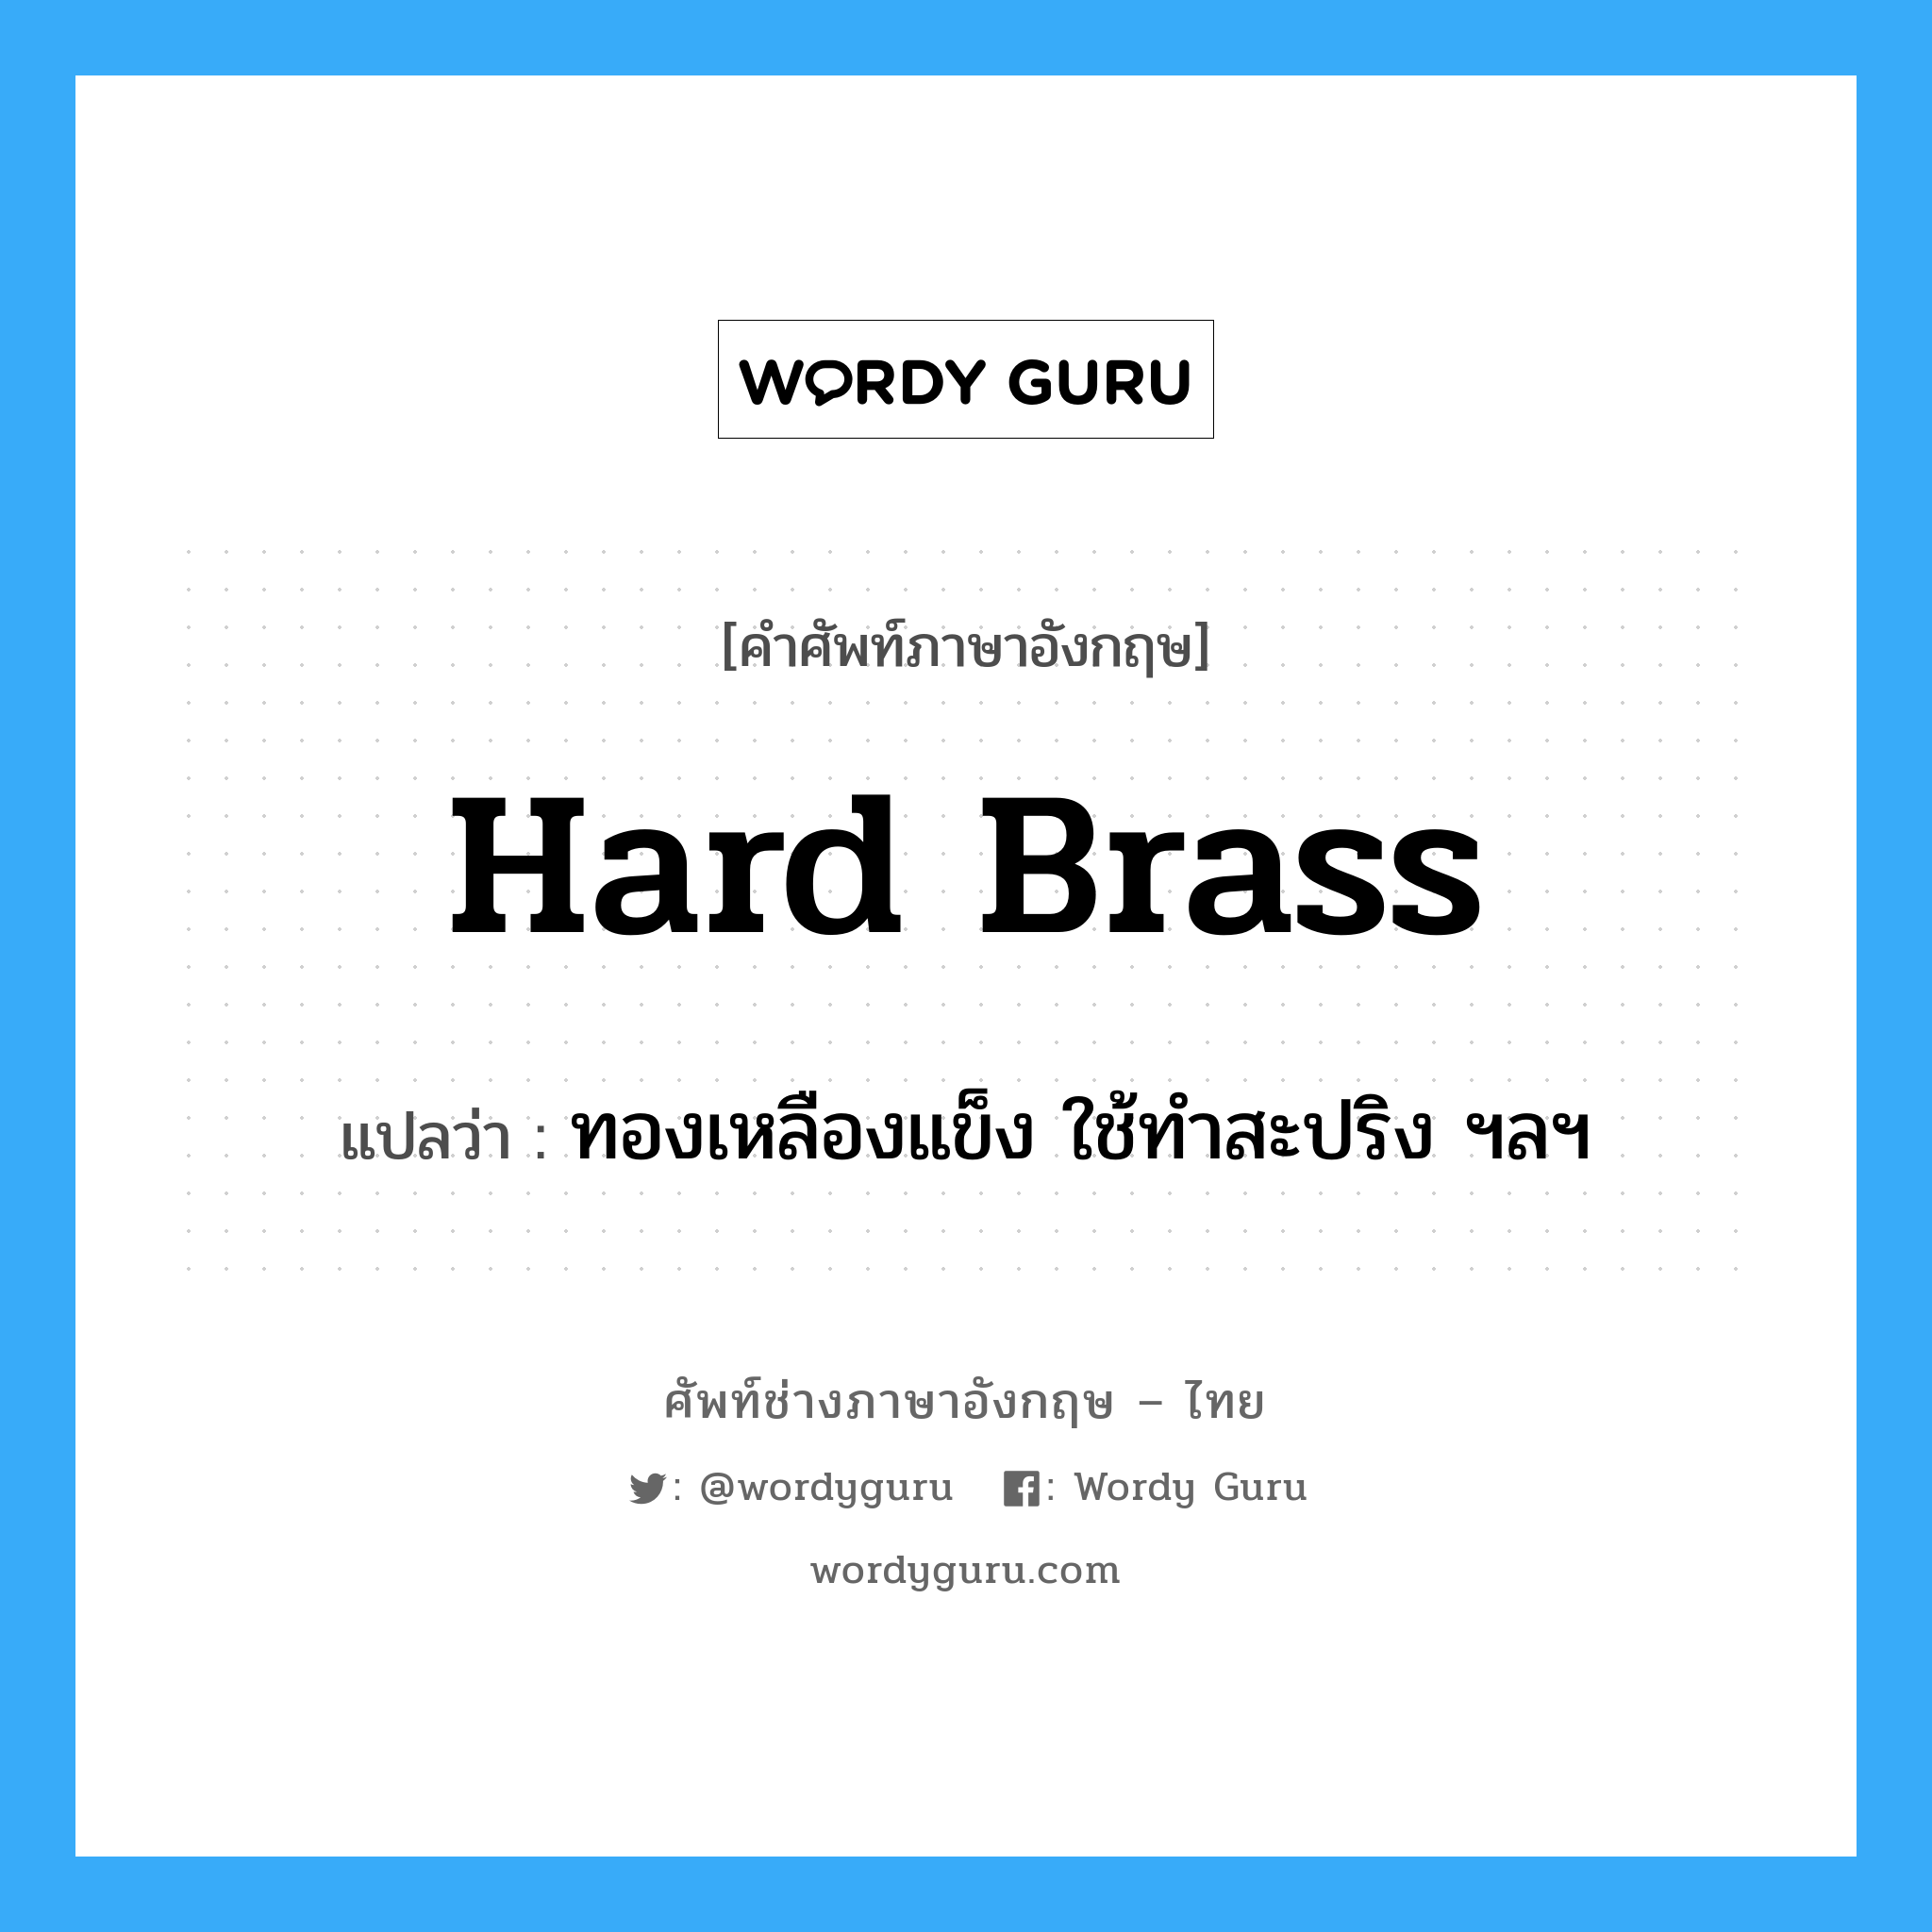 hard brass แปลว่า?, คำศัพท์ช่างภาษาอังกฤษ - ไทย hard brass คำศัพท์ภาษาอังกฤษ hard brass แปลว่า ทองเหลืองแข็ง ใช้ทำสะปริง ฯลฯ